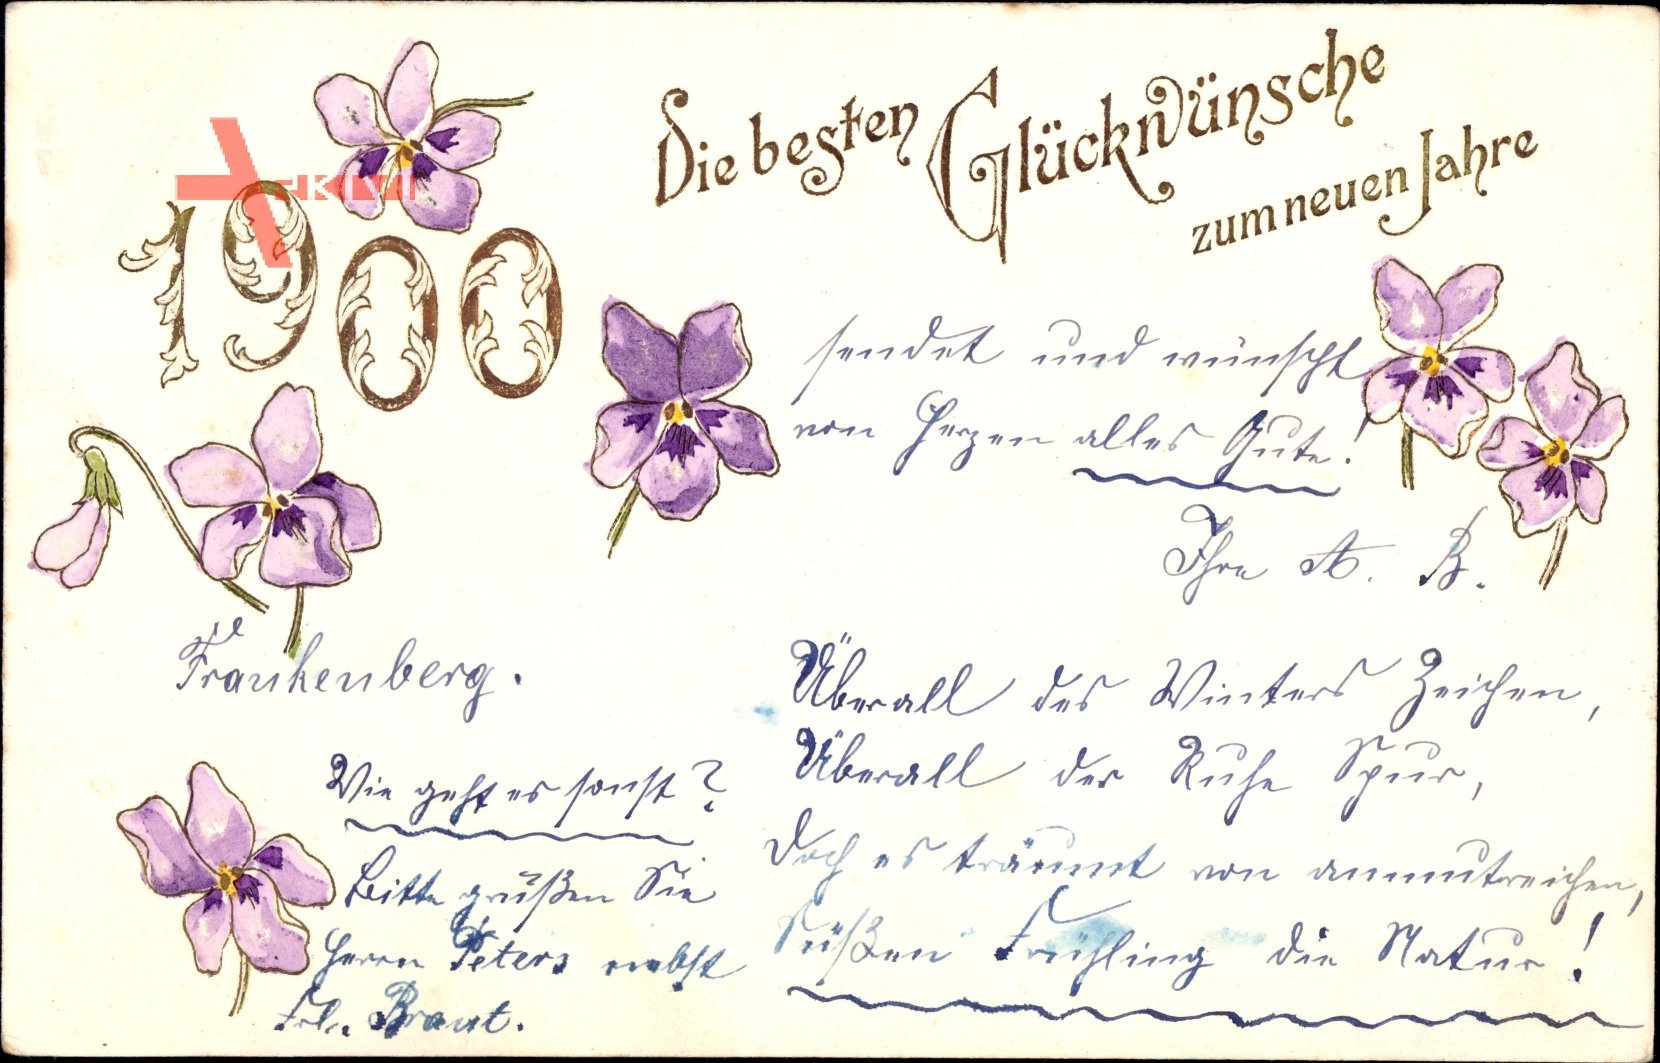 Glückwunsch Neujahr, Jahreszahl 1900, lila Blüten